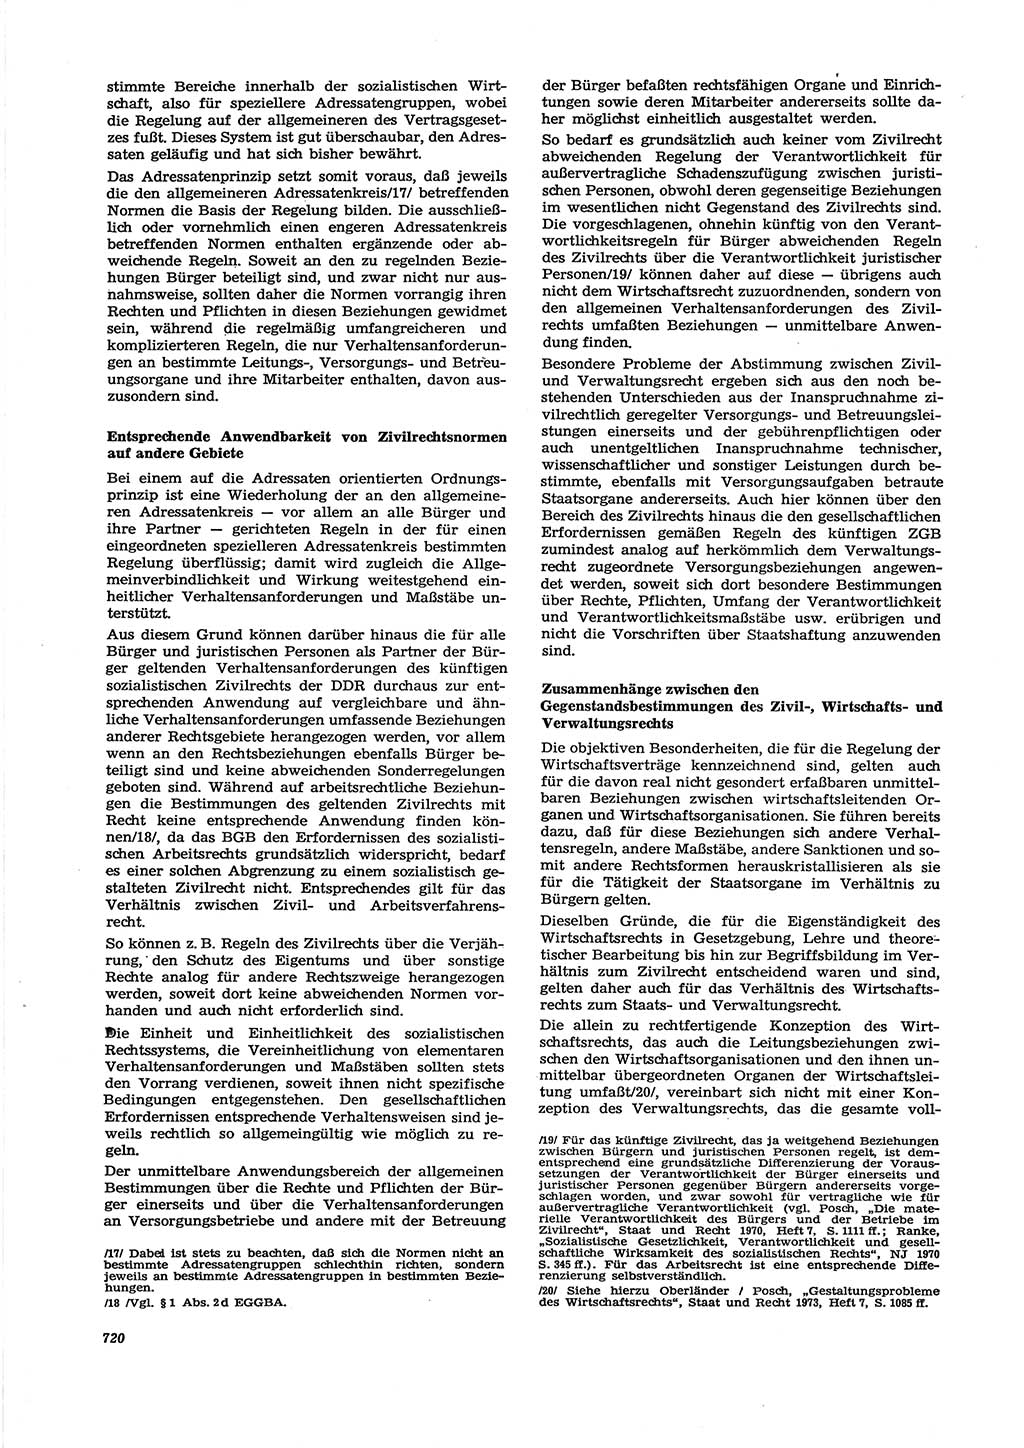 Neue Justiz (NJ), Zeitschrift für Recht und Rechtswissenschaft [Deutsche Demokratische Republik (DDR)], 27. Jahrgang 1973, Seite 720 (NJ DDR 1973, S. 720)